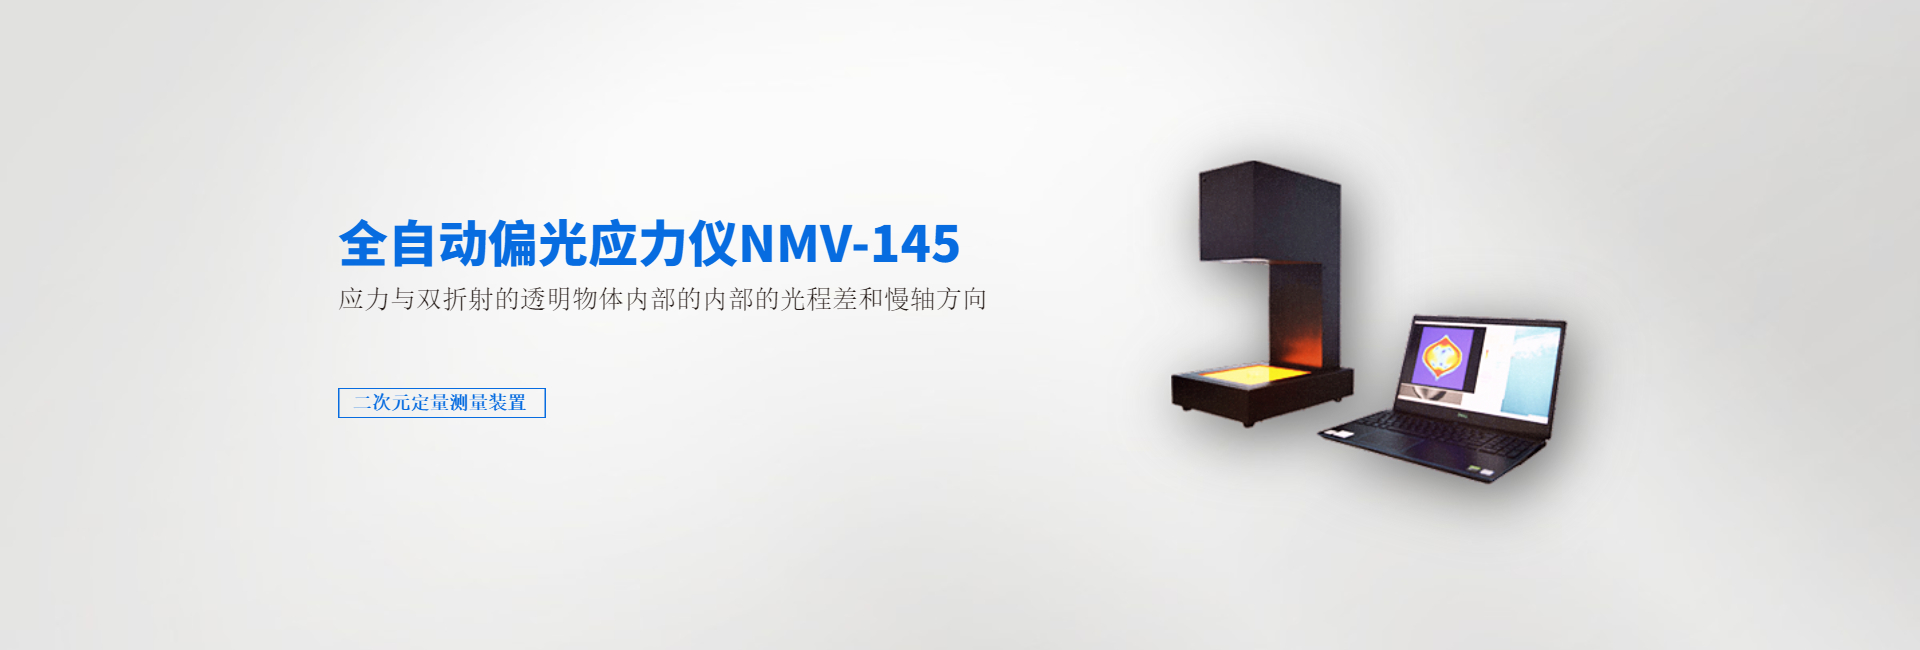 全自动偏光应力仪NMV-145